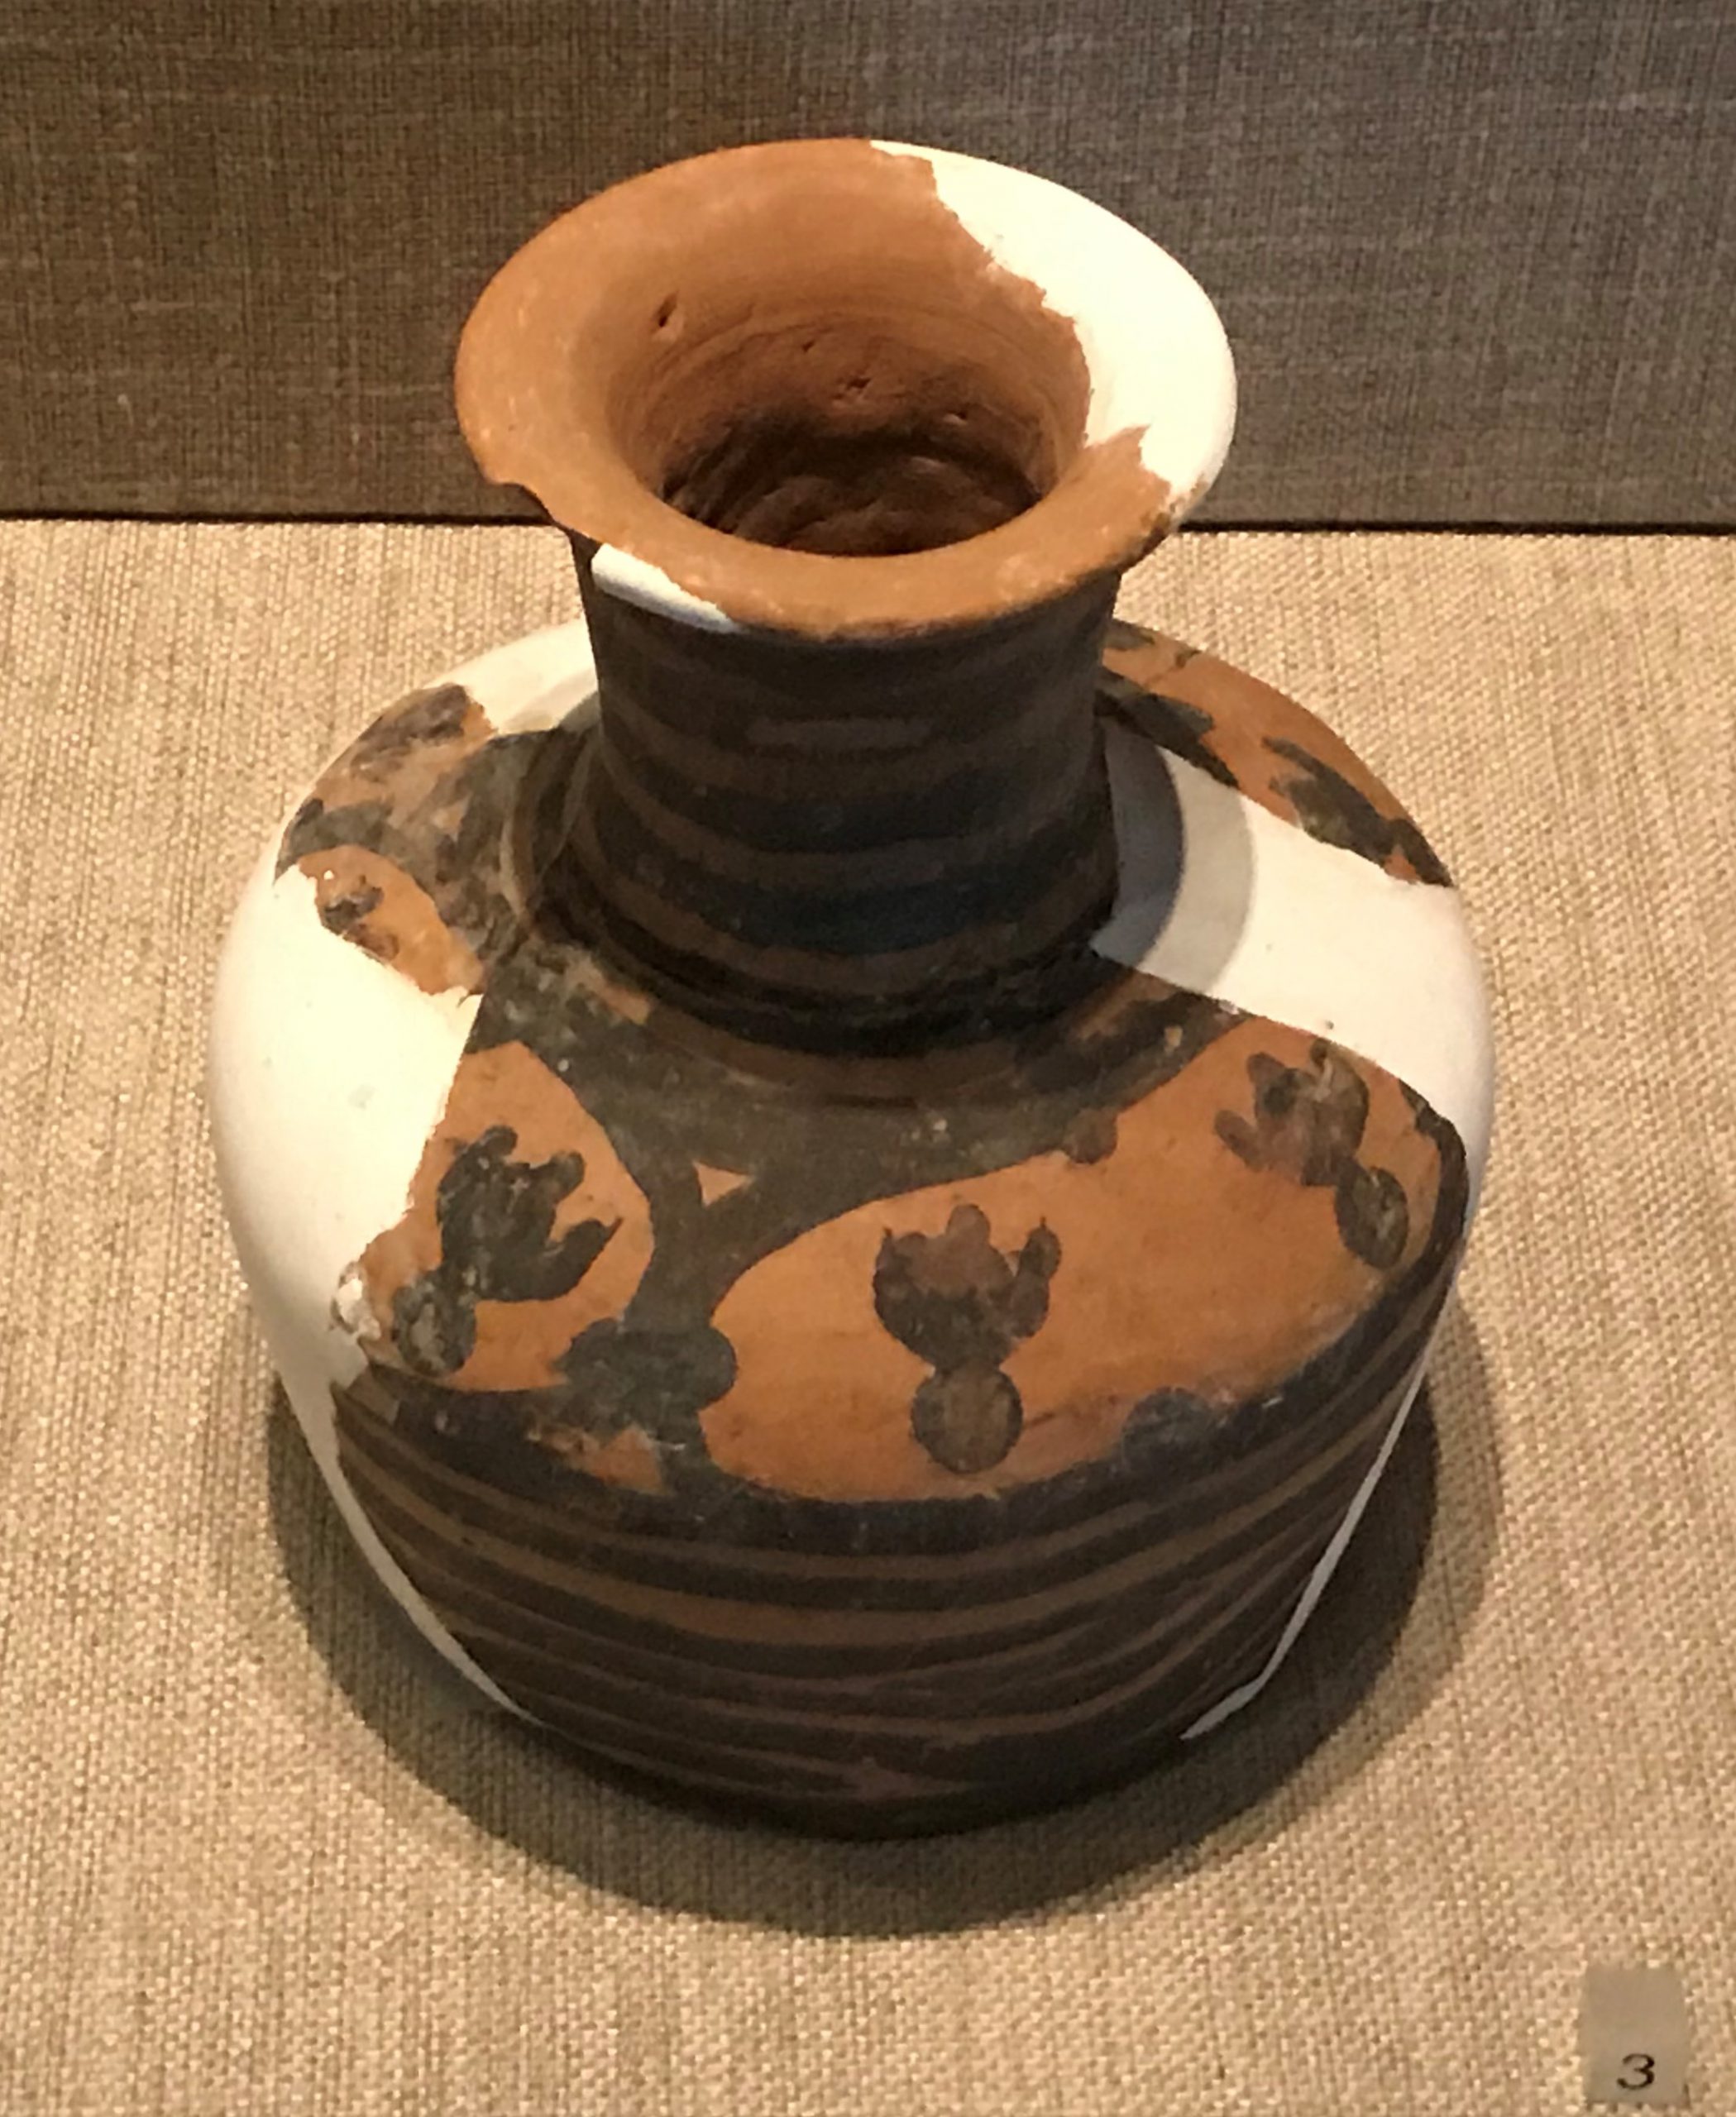 彩陶罐-彩陶瓶-陶人面像-彩陶盆-先秦時代-常設展F２-成都博物館